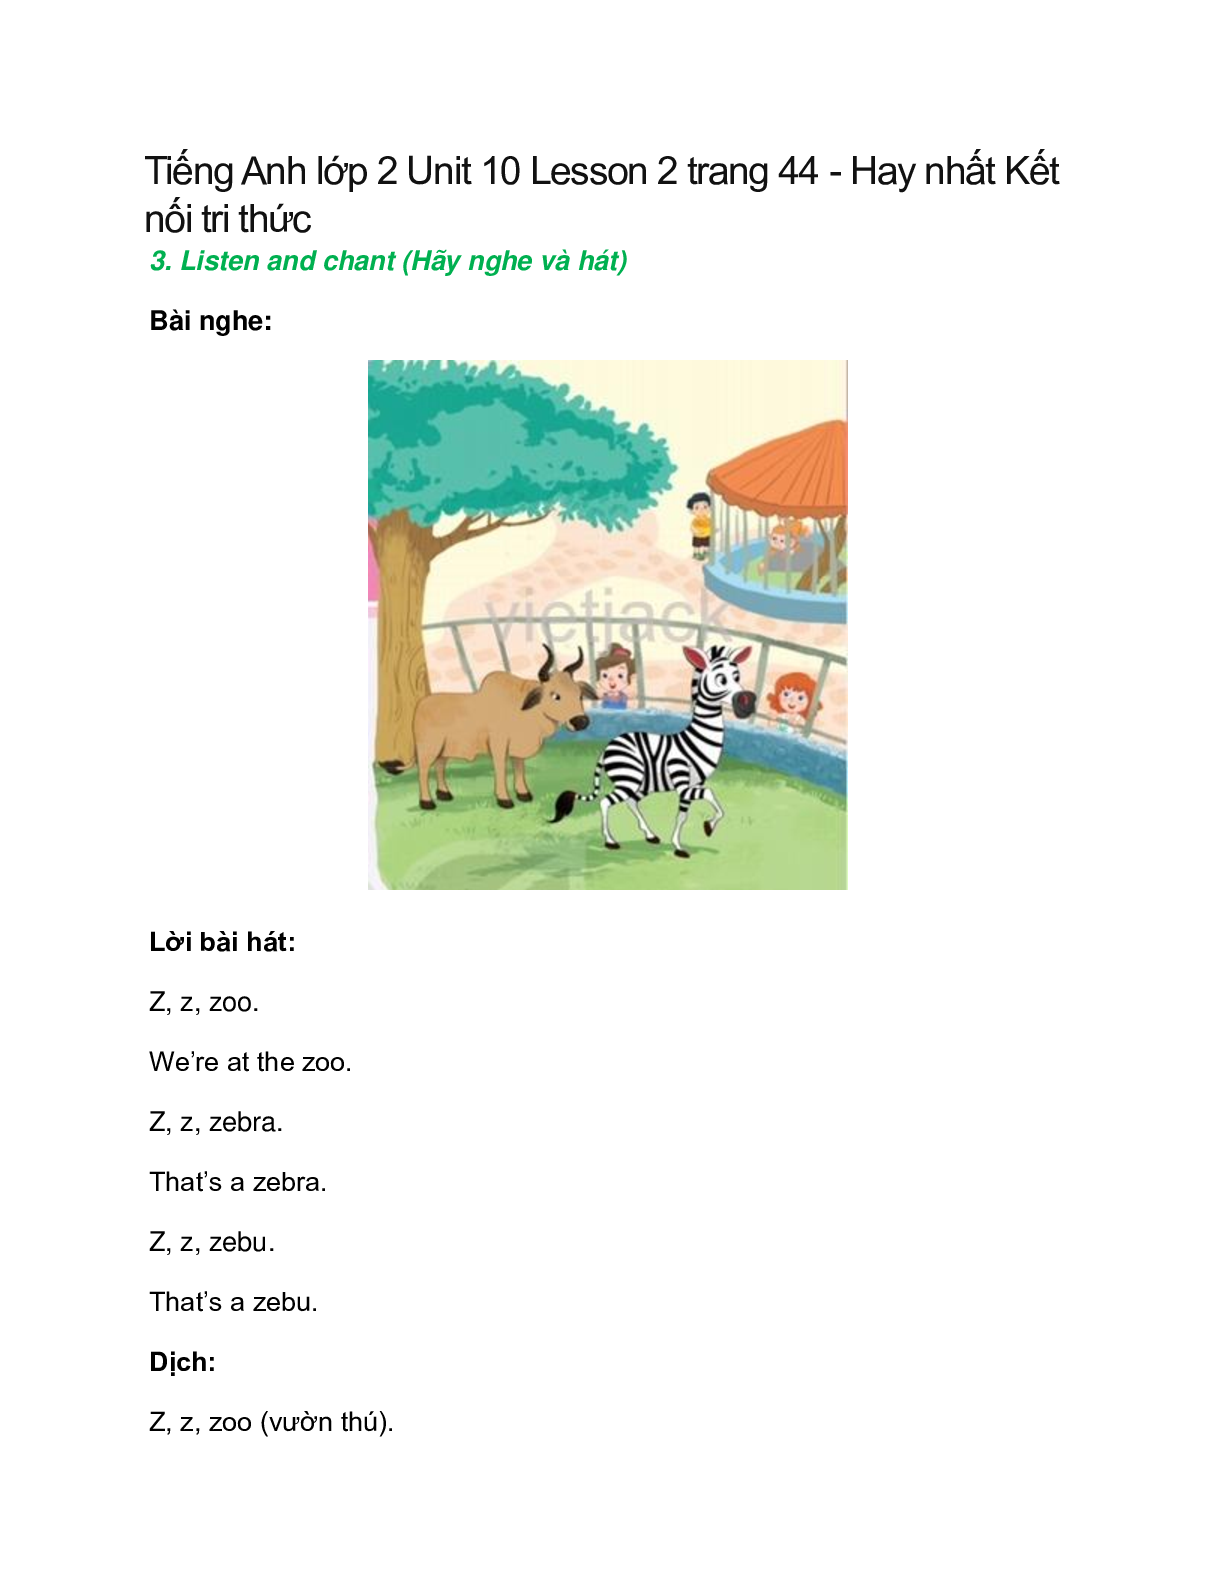 Tiếng Anh lớp 2 Unit 10 Lesson 2 trang 44 – Kết nối tri thức (trang 1)